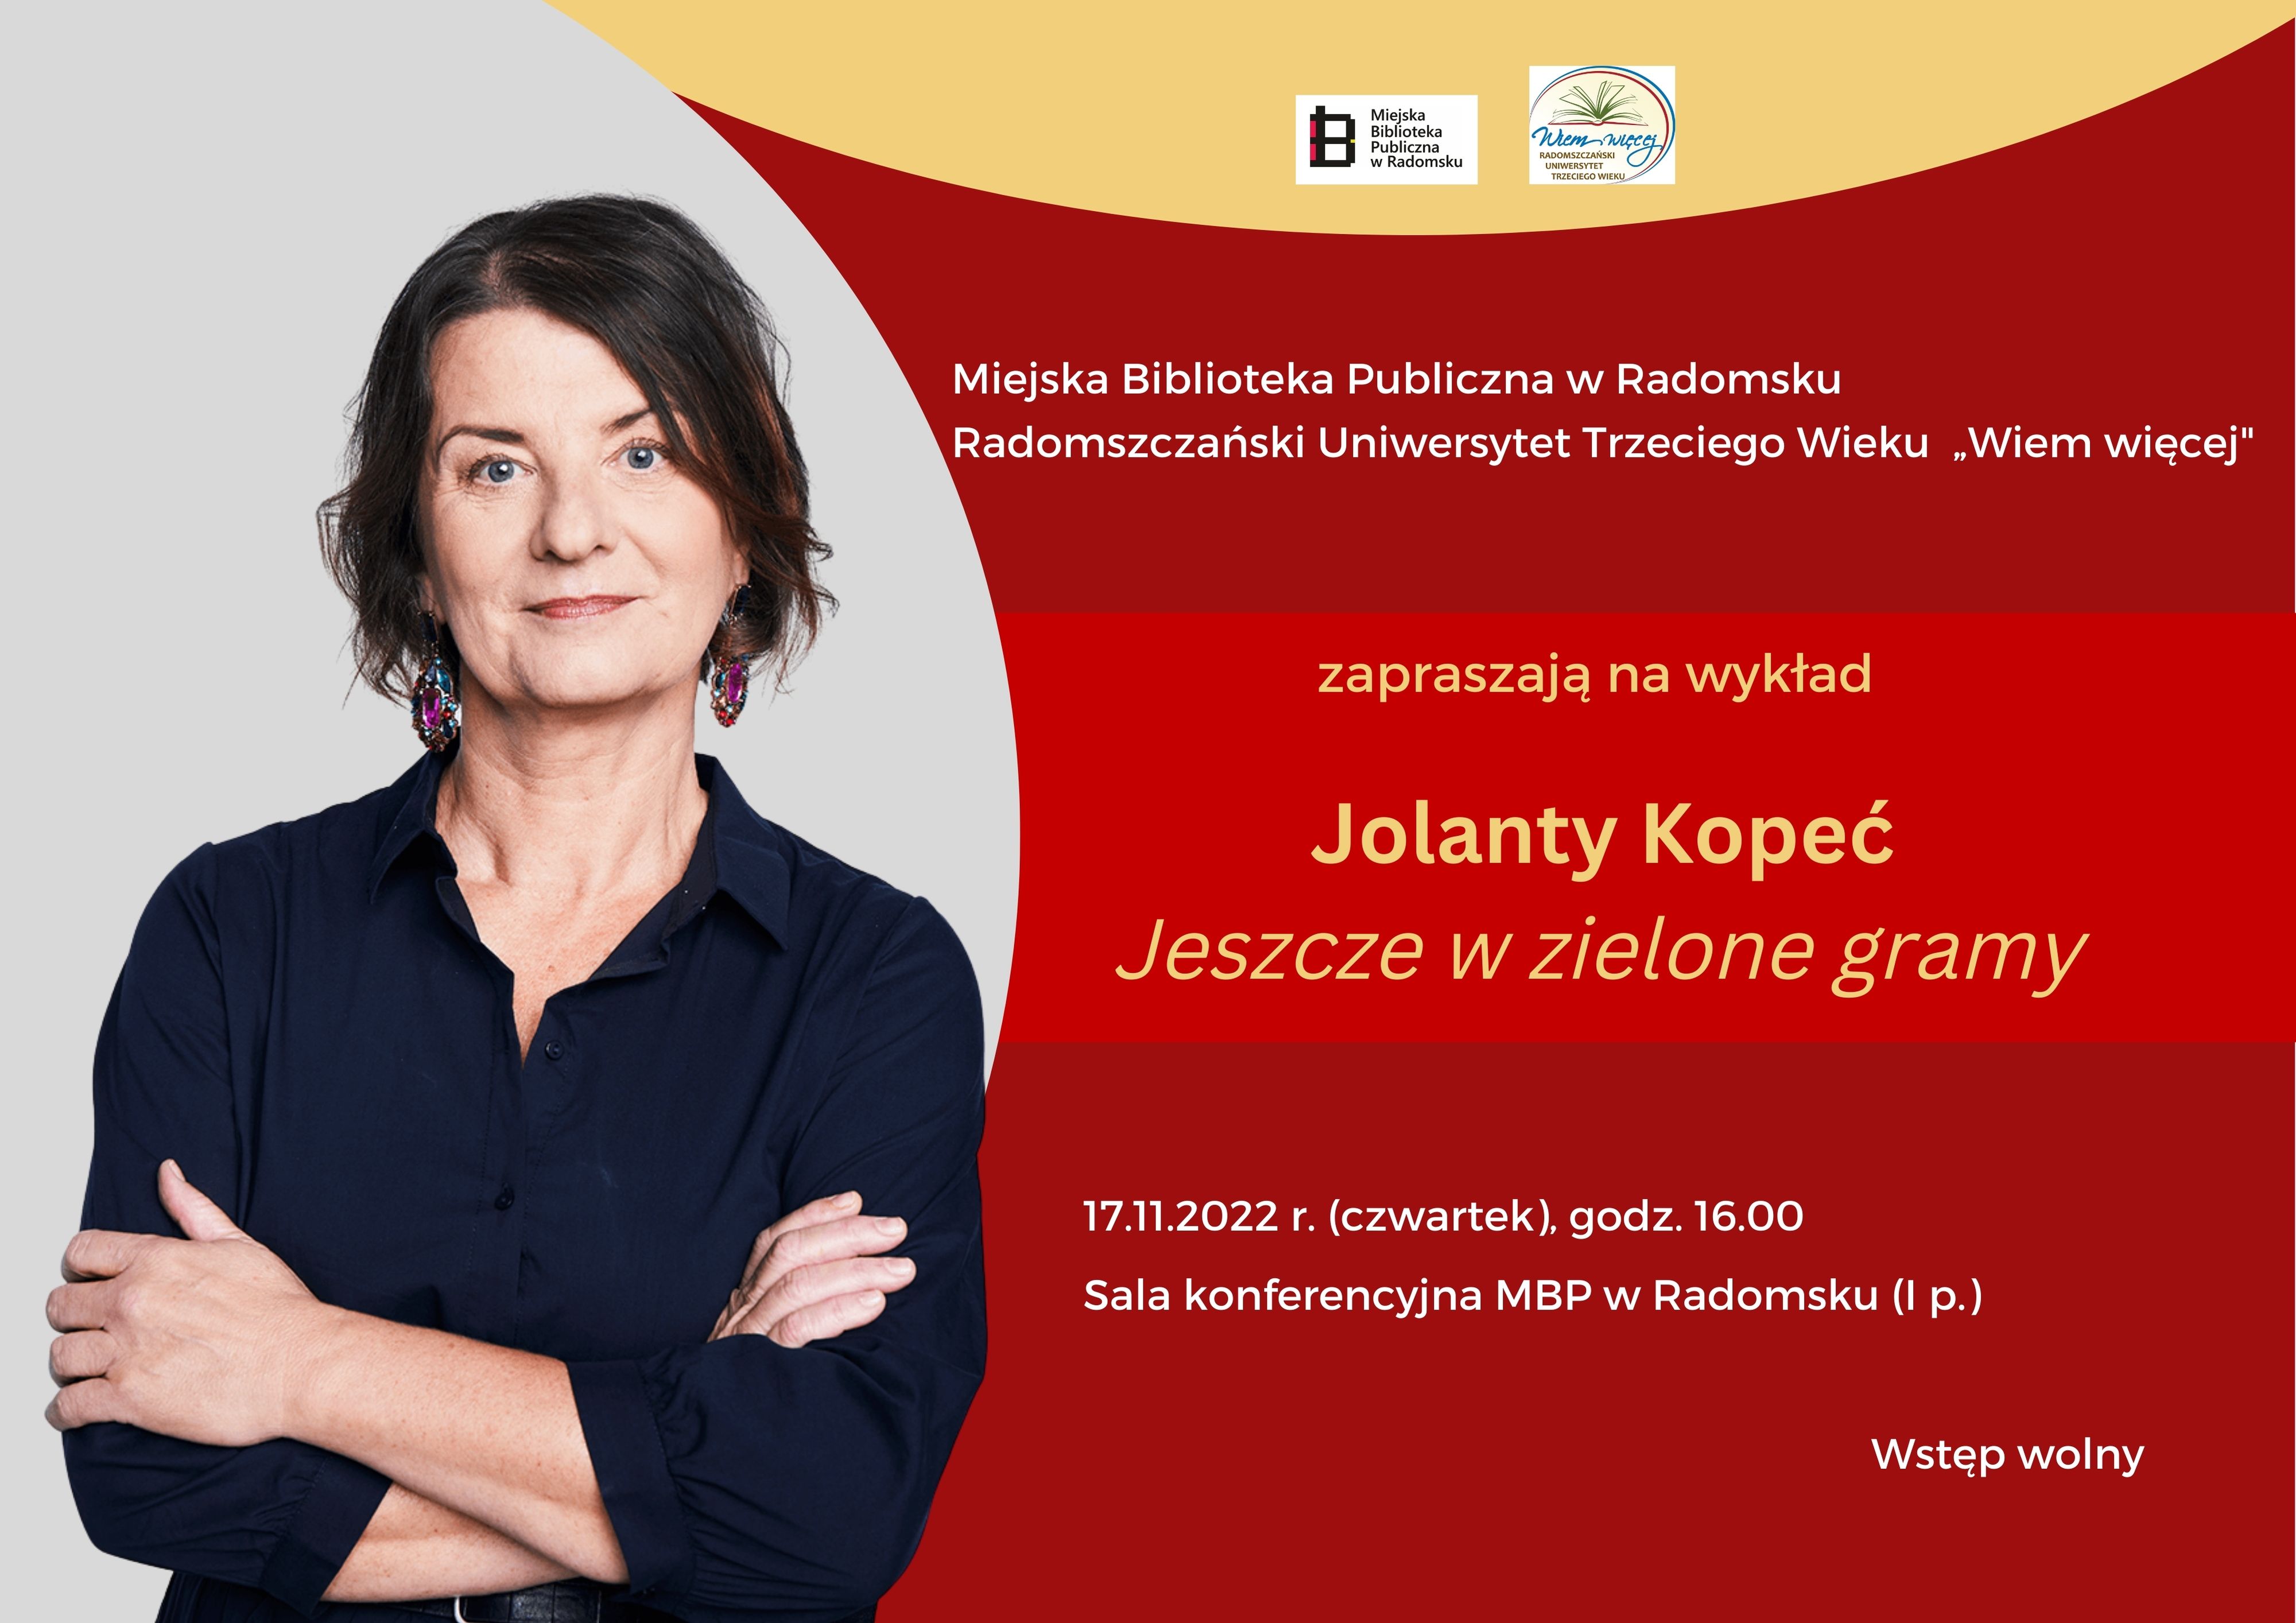 Jolanta Kopeć